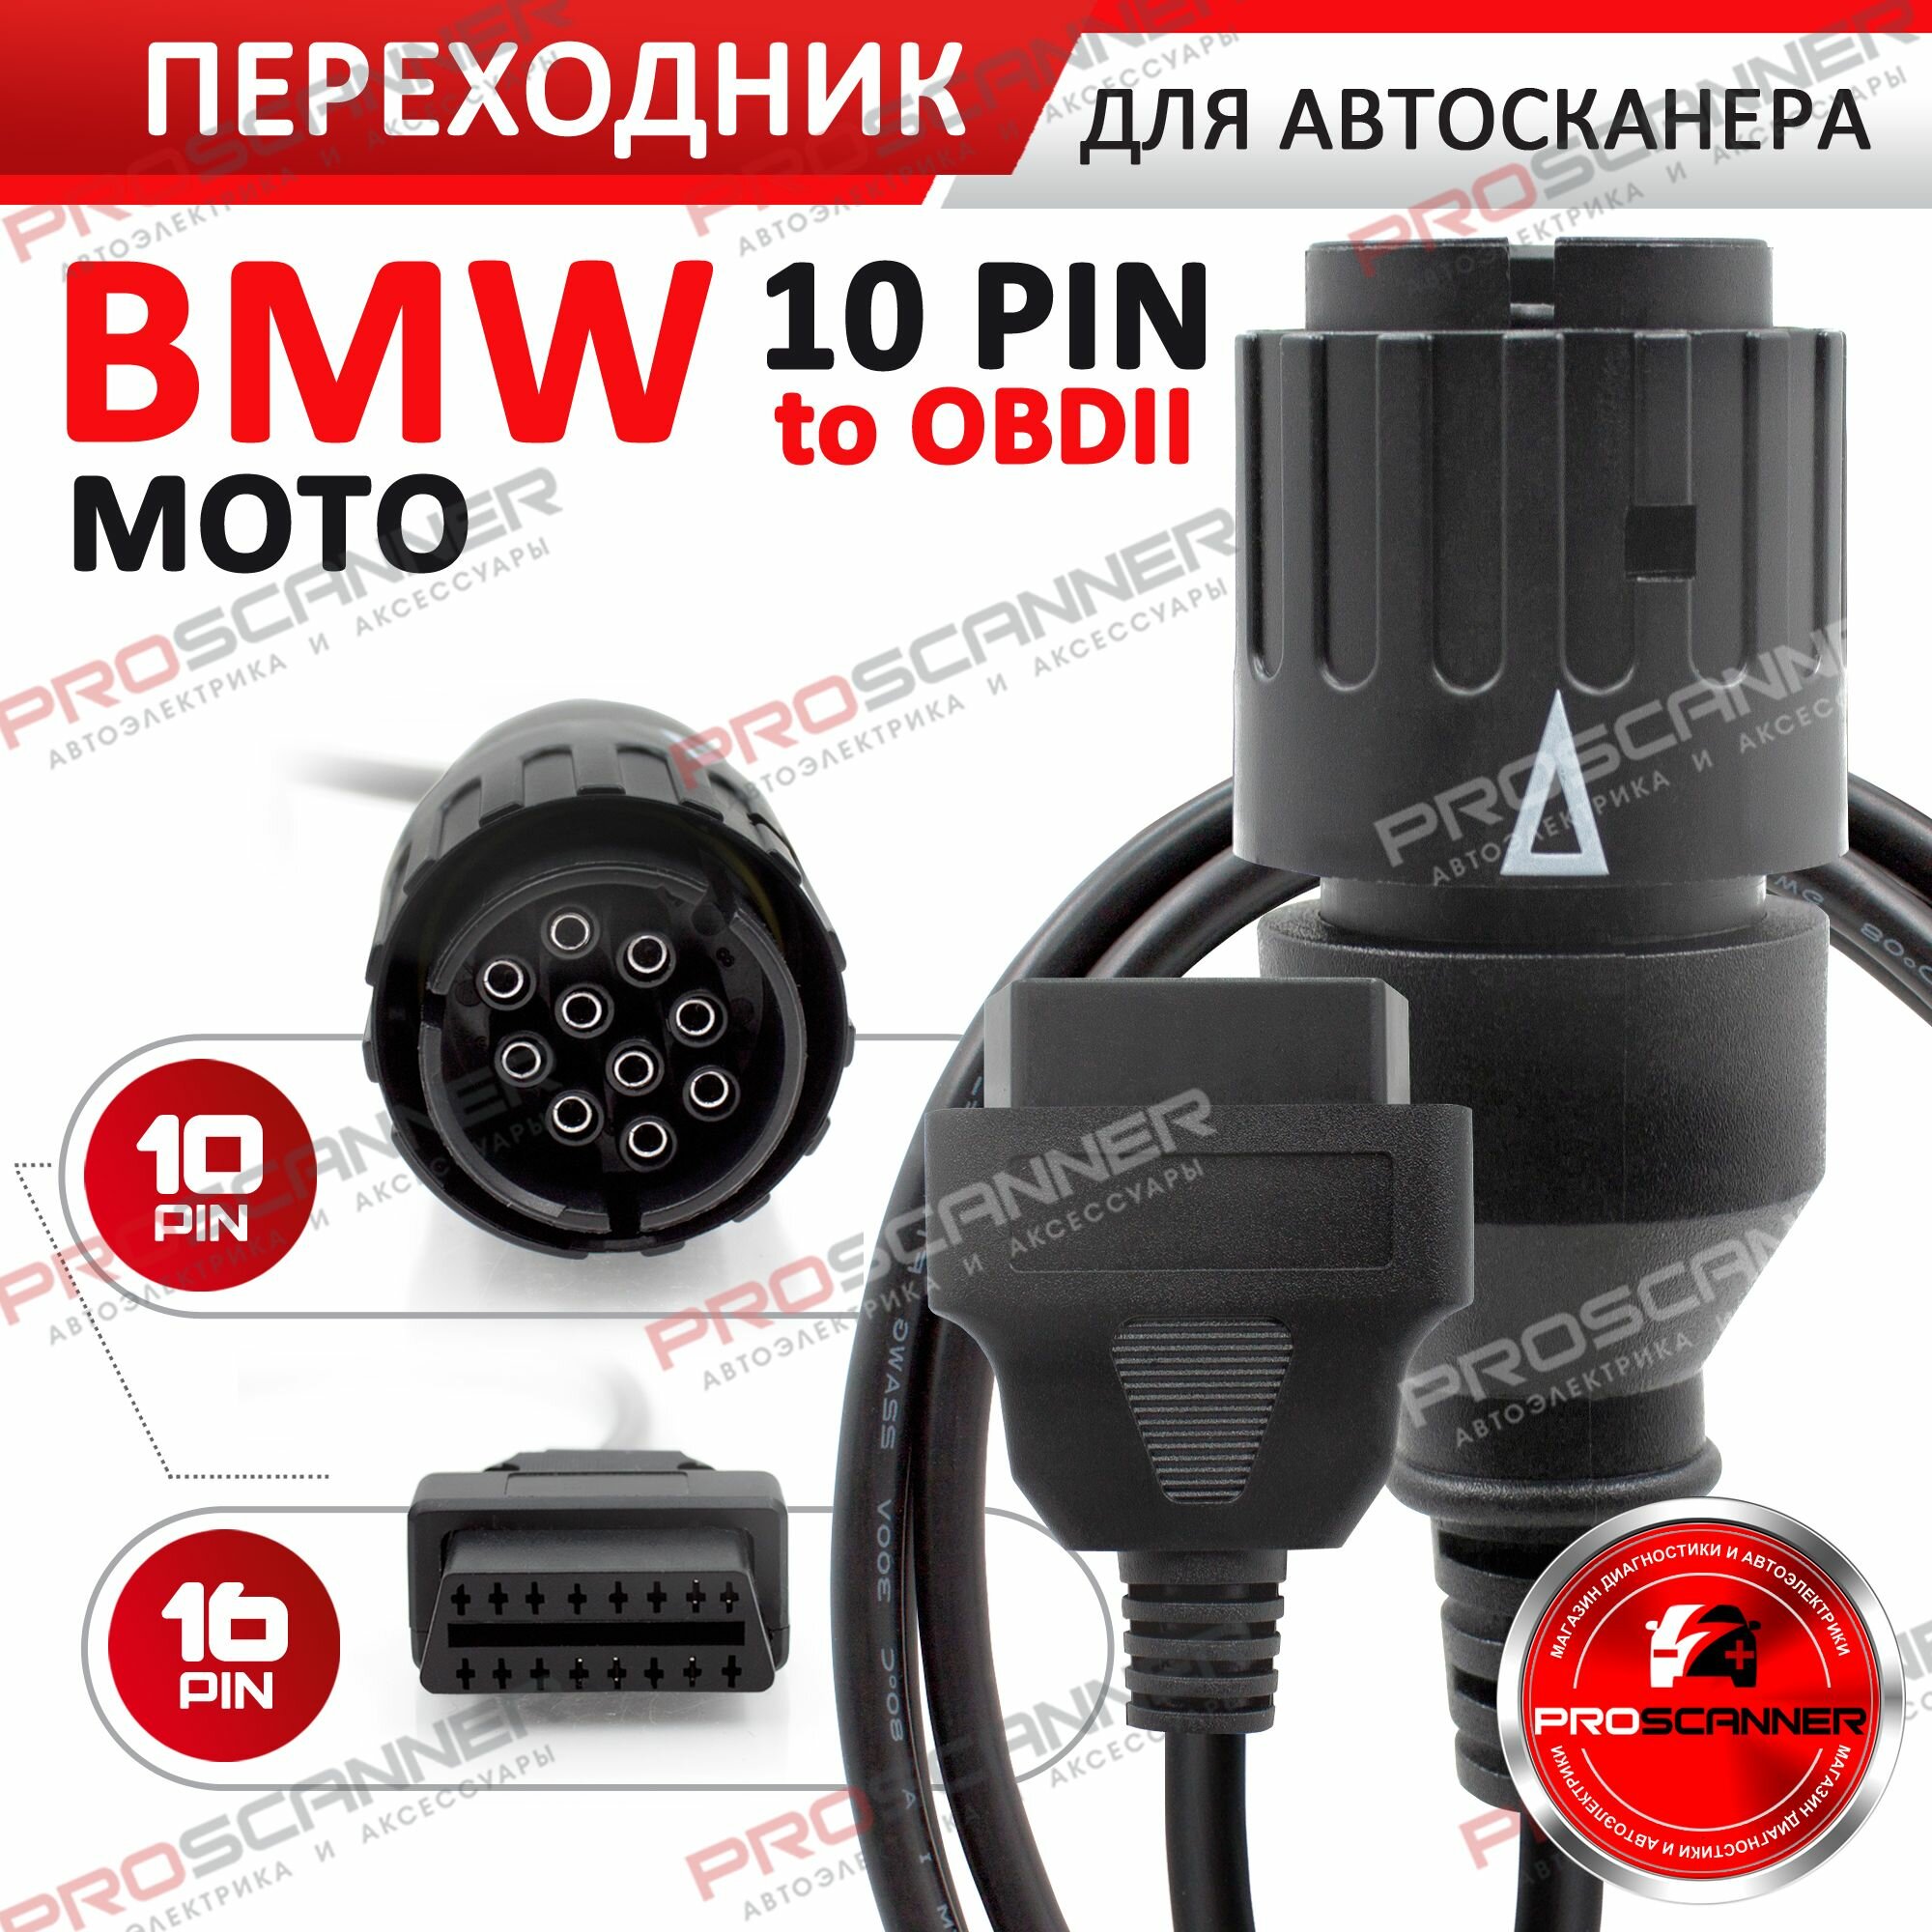 Переходник для диагностики OBD2 - для BMW MOTO мотоциклы10 pin (для автосканера)